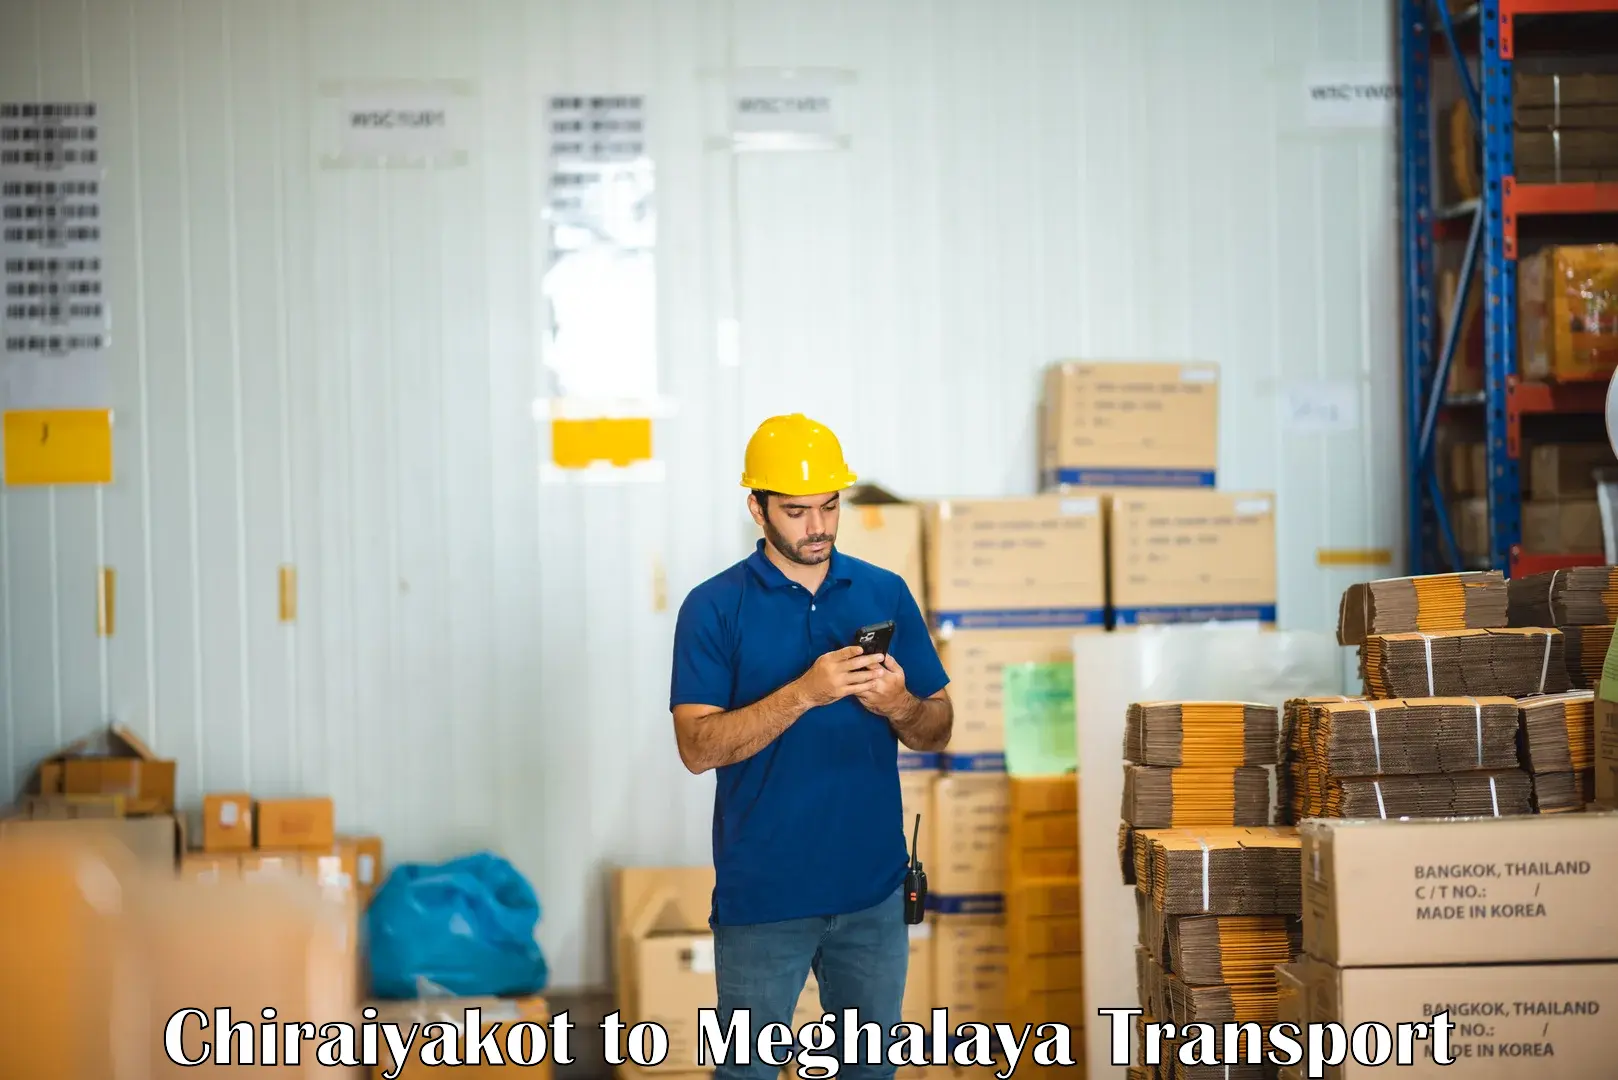 Two wheeler parcel service Chiraiyakot to NIT Meghalaya